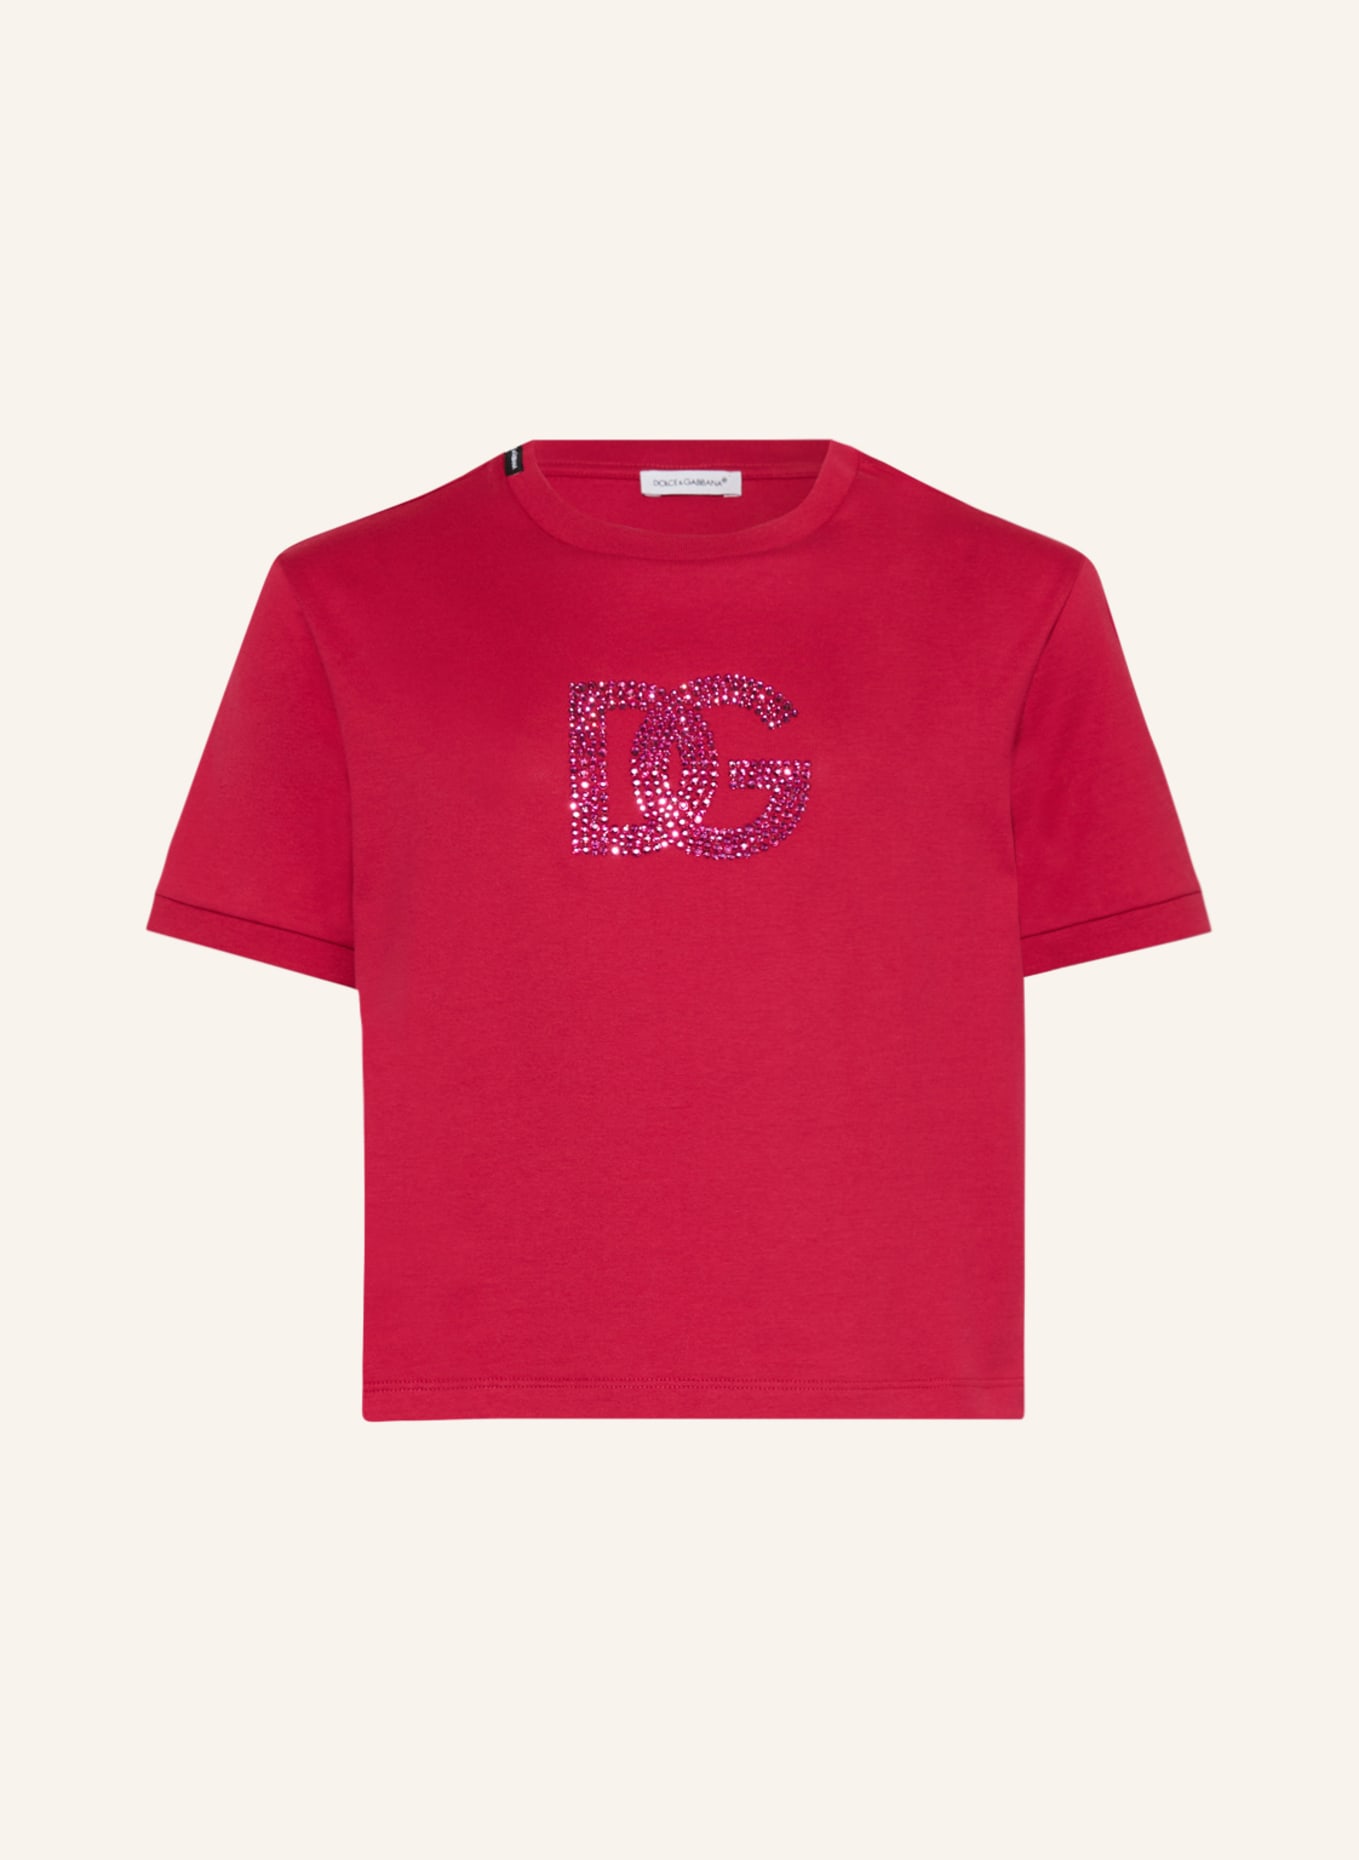 DOLCE & GABBANA T-Shirt mit Schmucksteinen, Farbe: PINK (Bild 1)